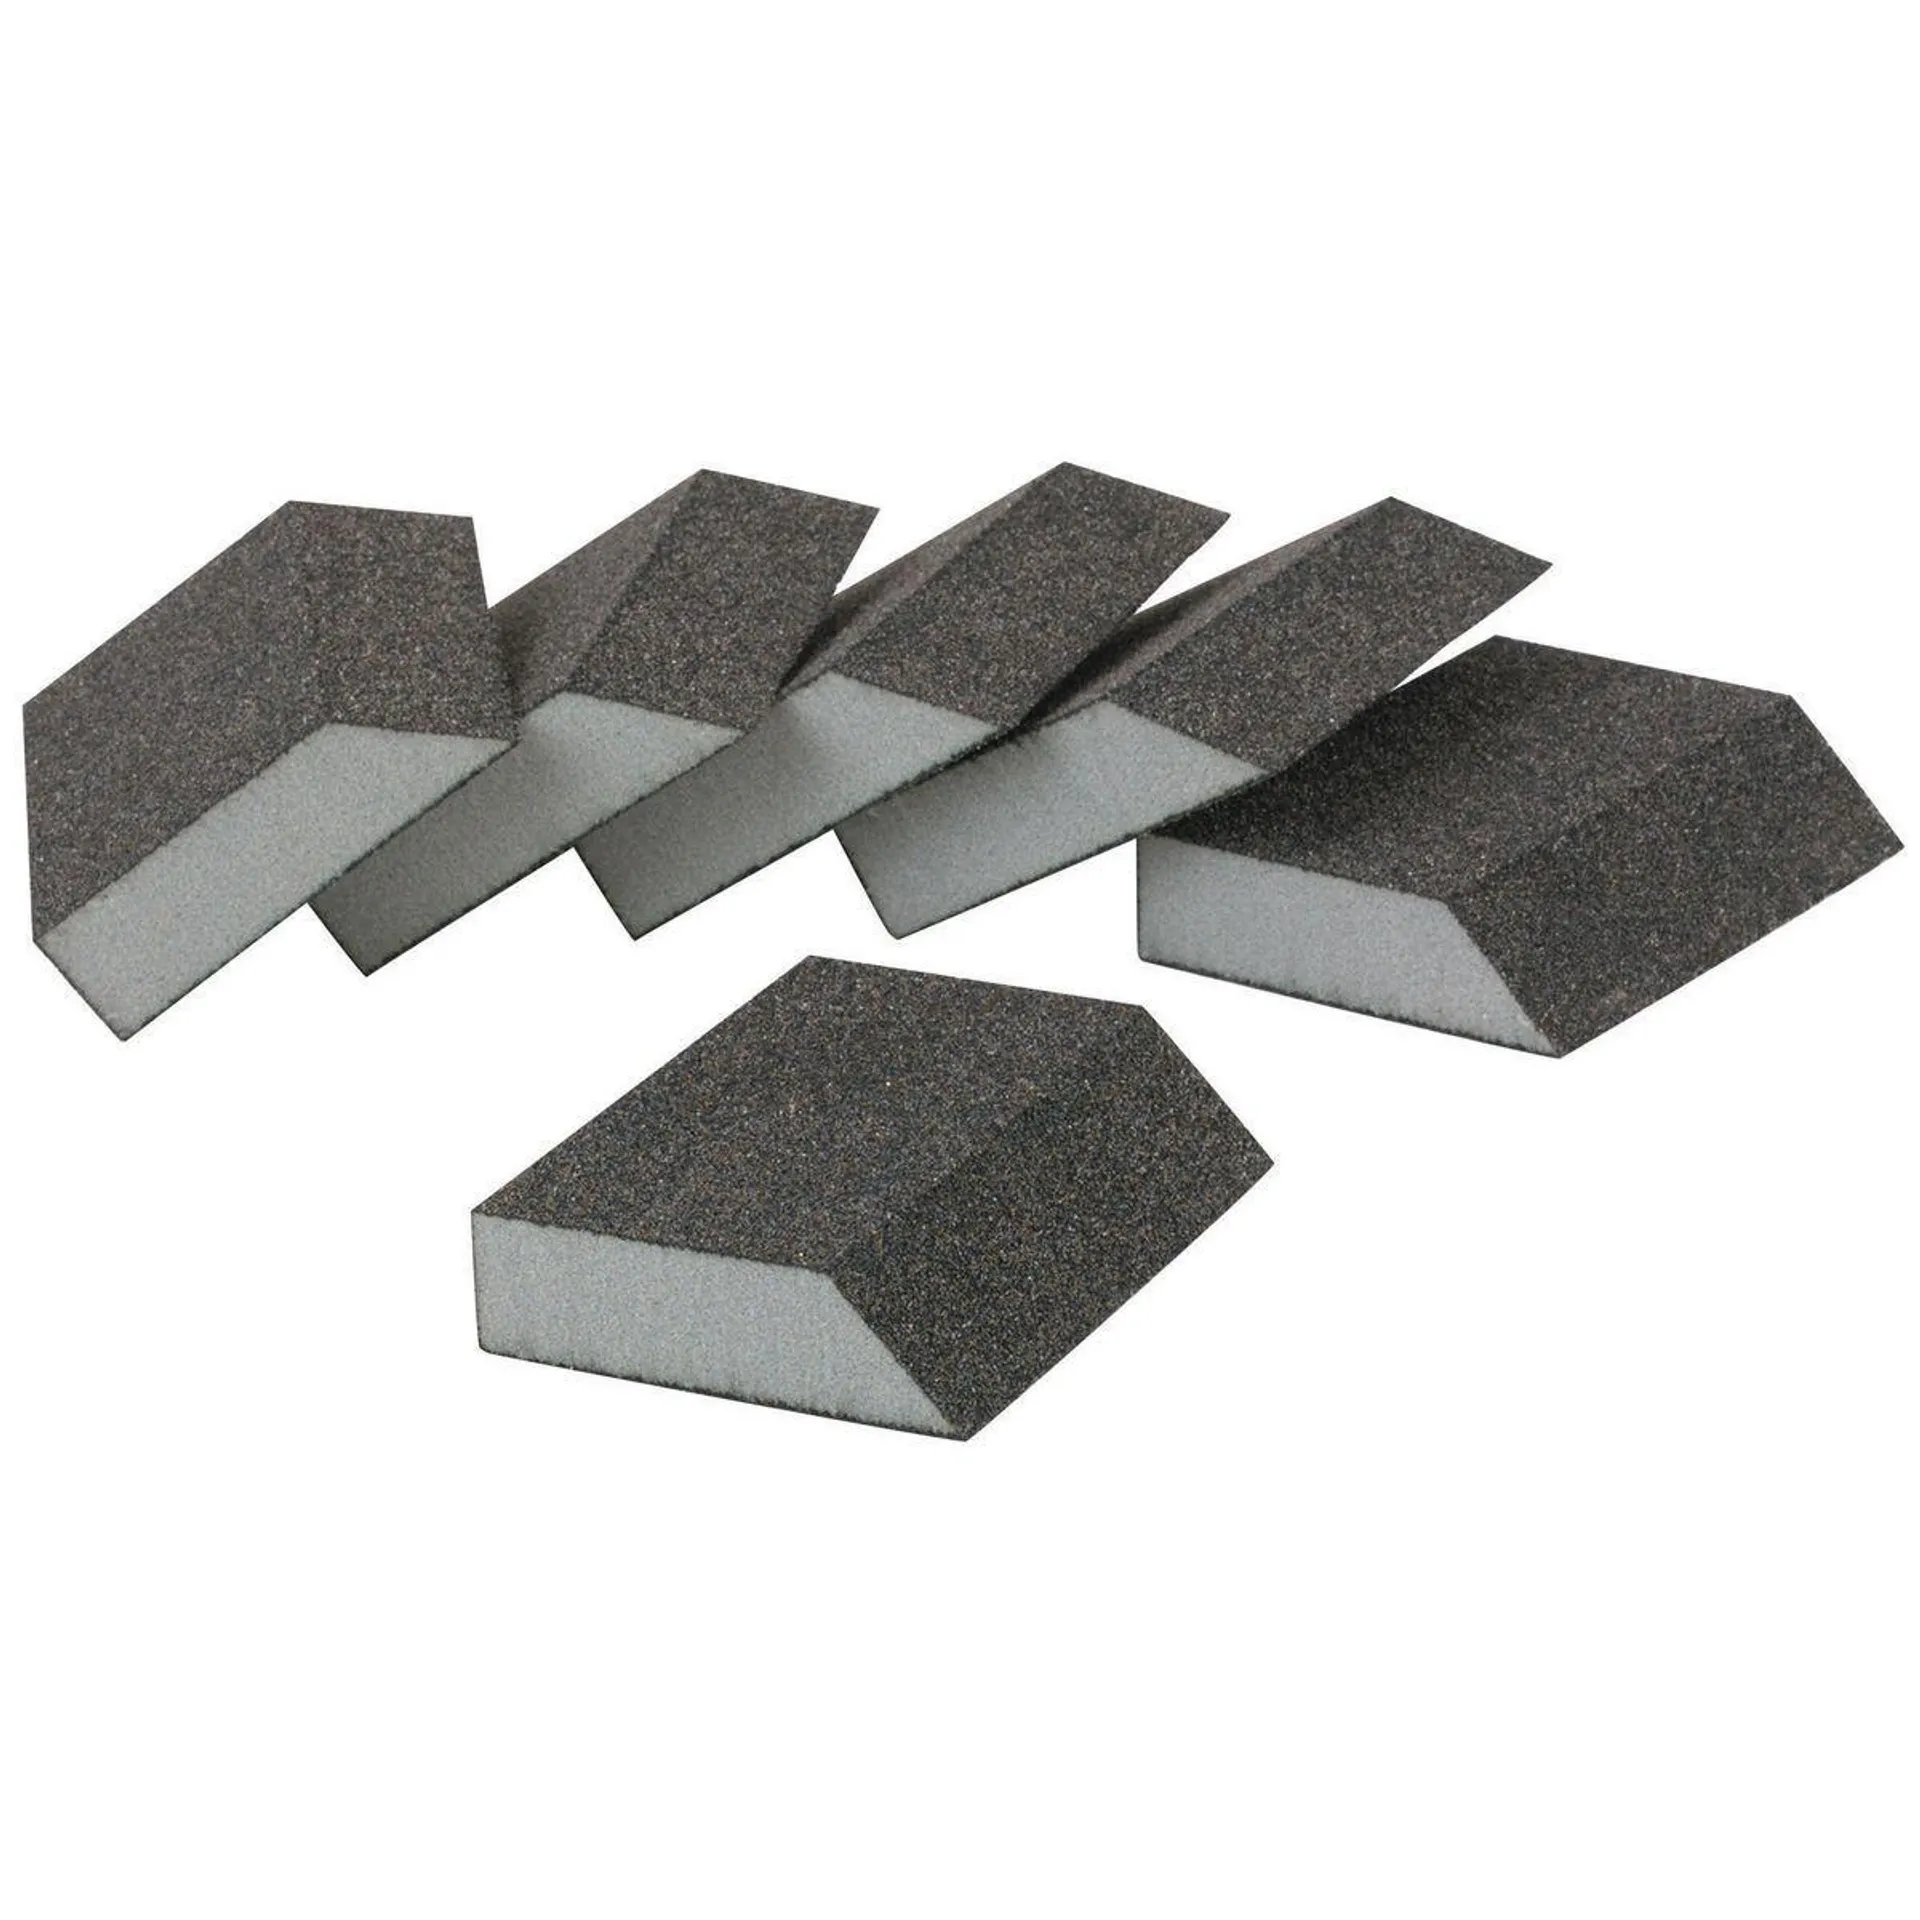 Aluminum Oxide Angled Sanding Sponges - Fine Grade, 6 Pack